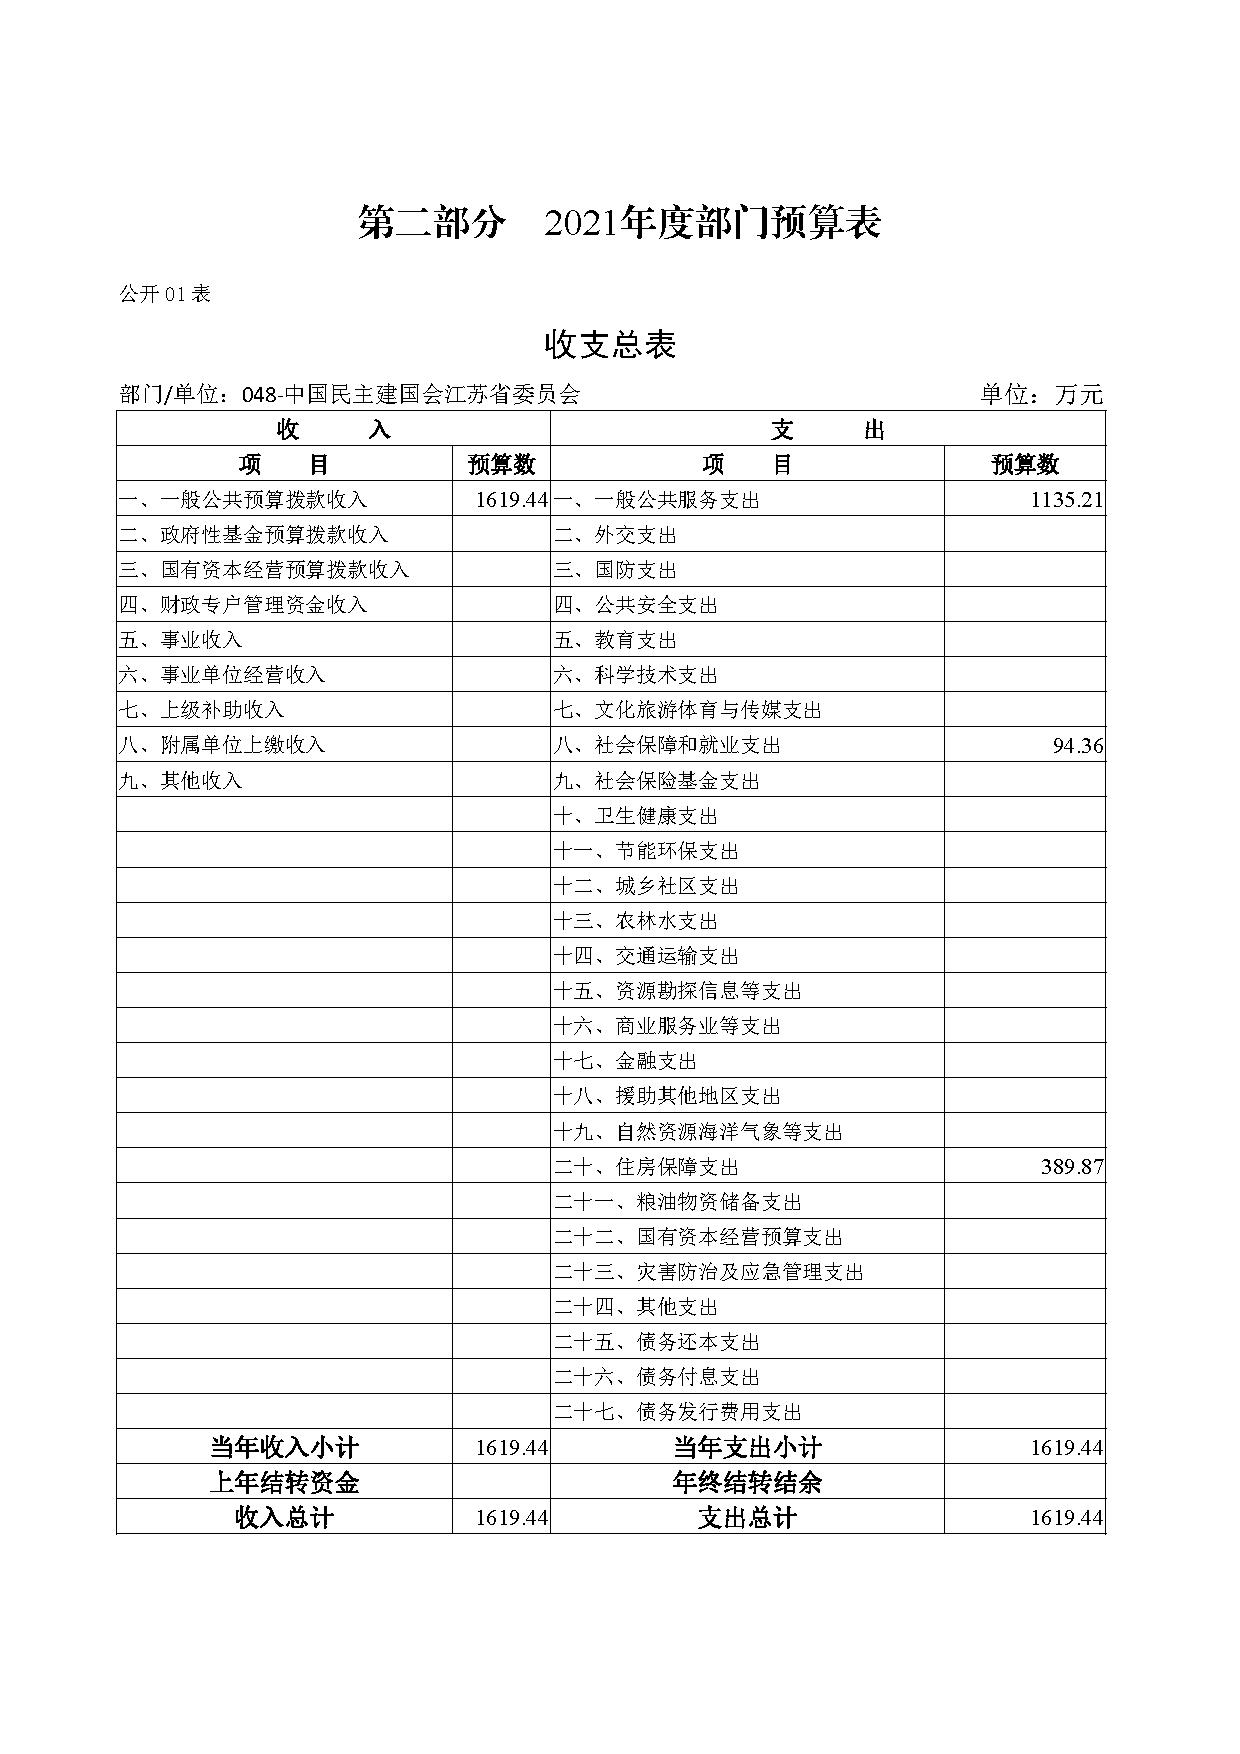 2021年度中国民主建国会江苏省委员会部门预算公开-7.jpg